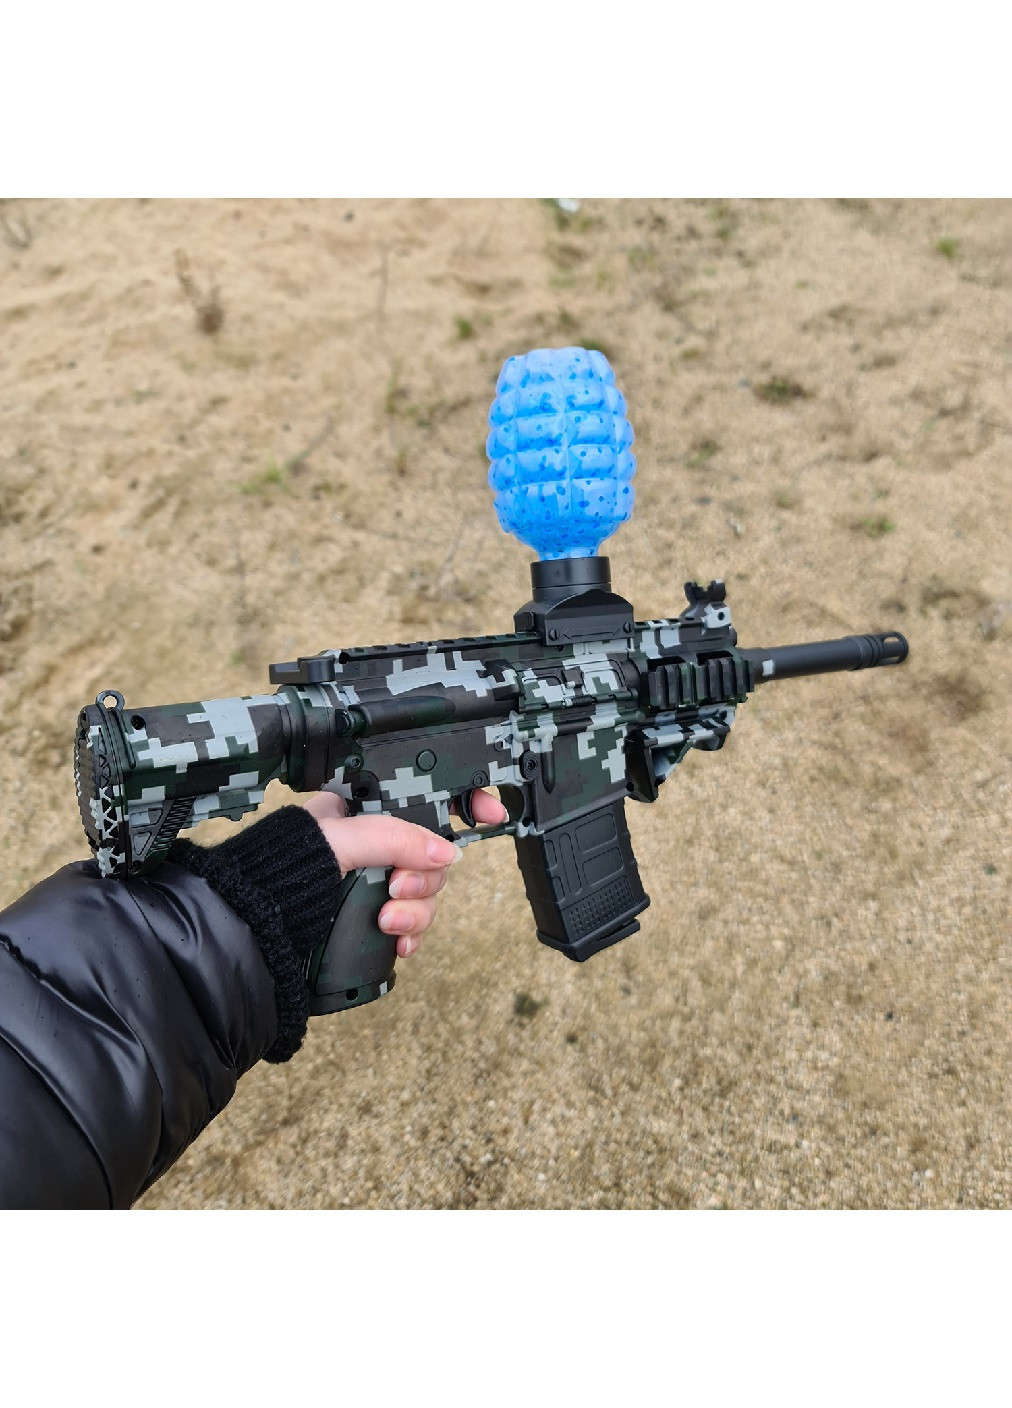 Детский игрушечный аккумуляторный пистолет оружие винтовка для гелевых шариков 500 мАч 43,5х26,5х4 см (475154-Prob) Unbranded (262453139)